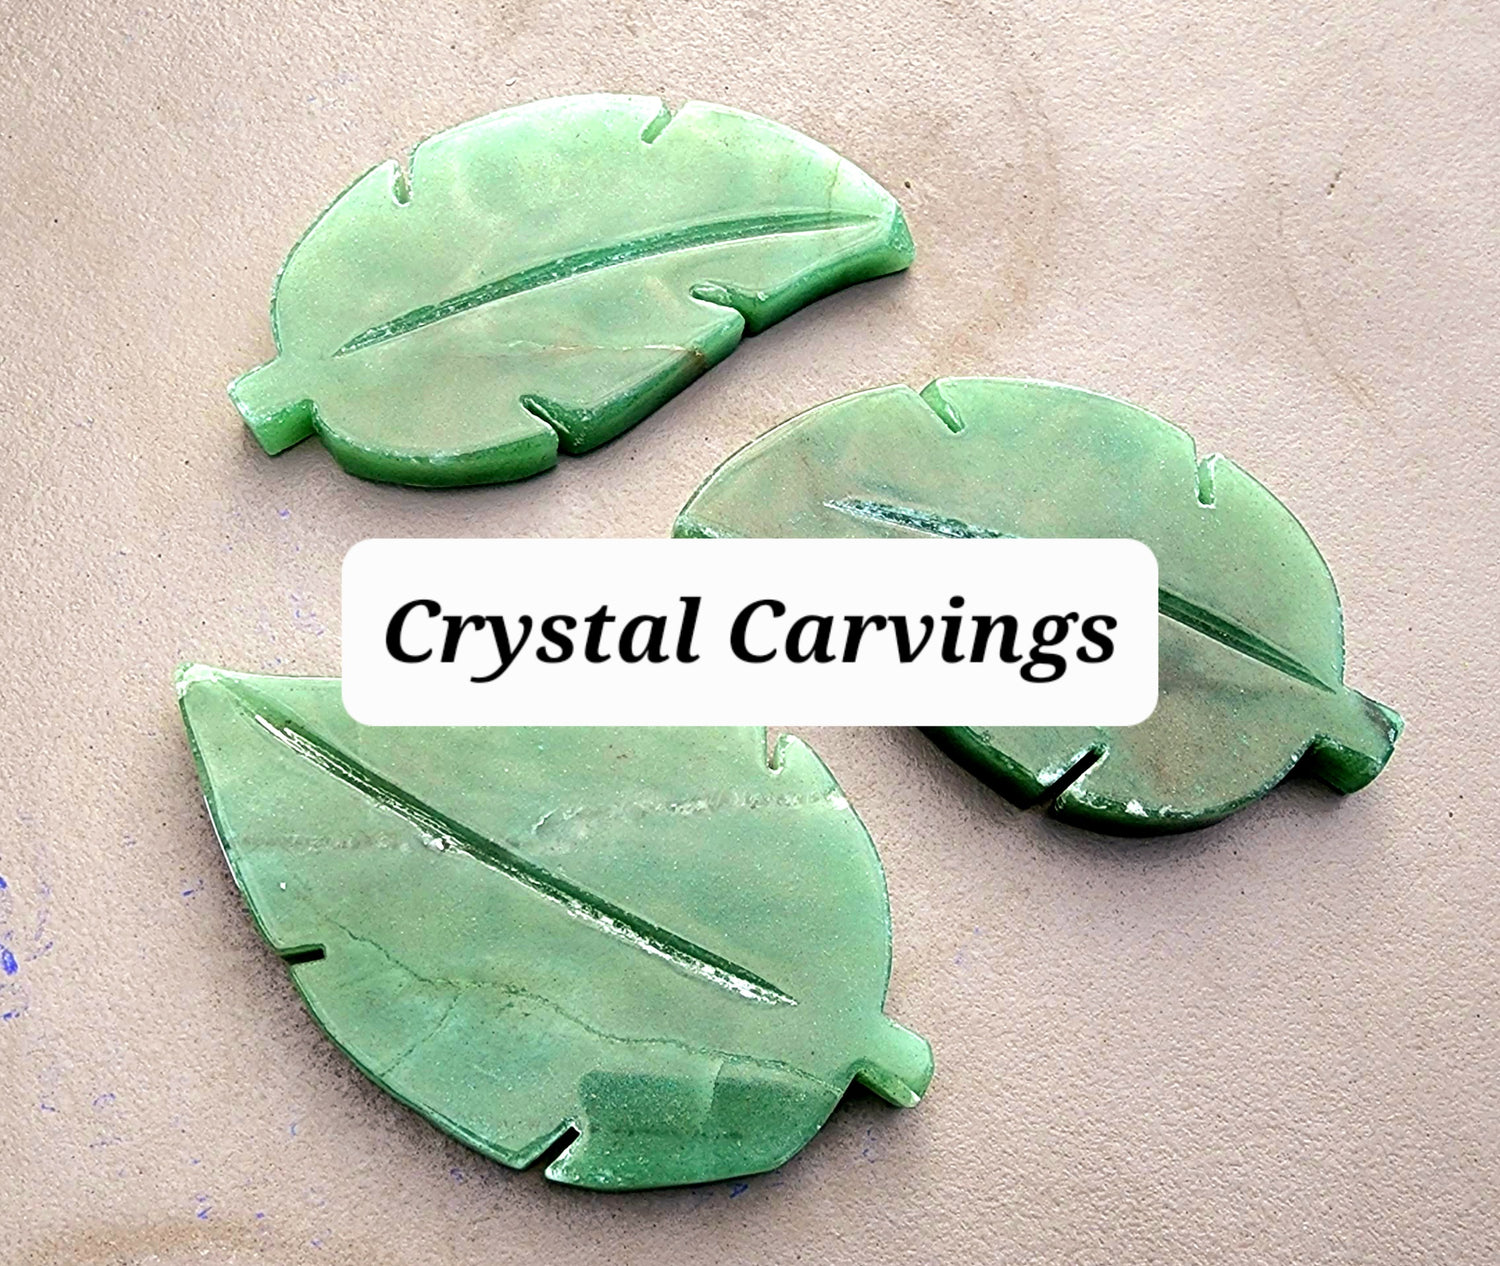 Crystal Carvings